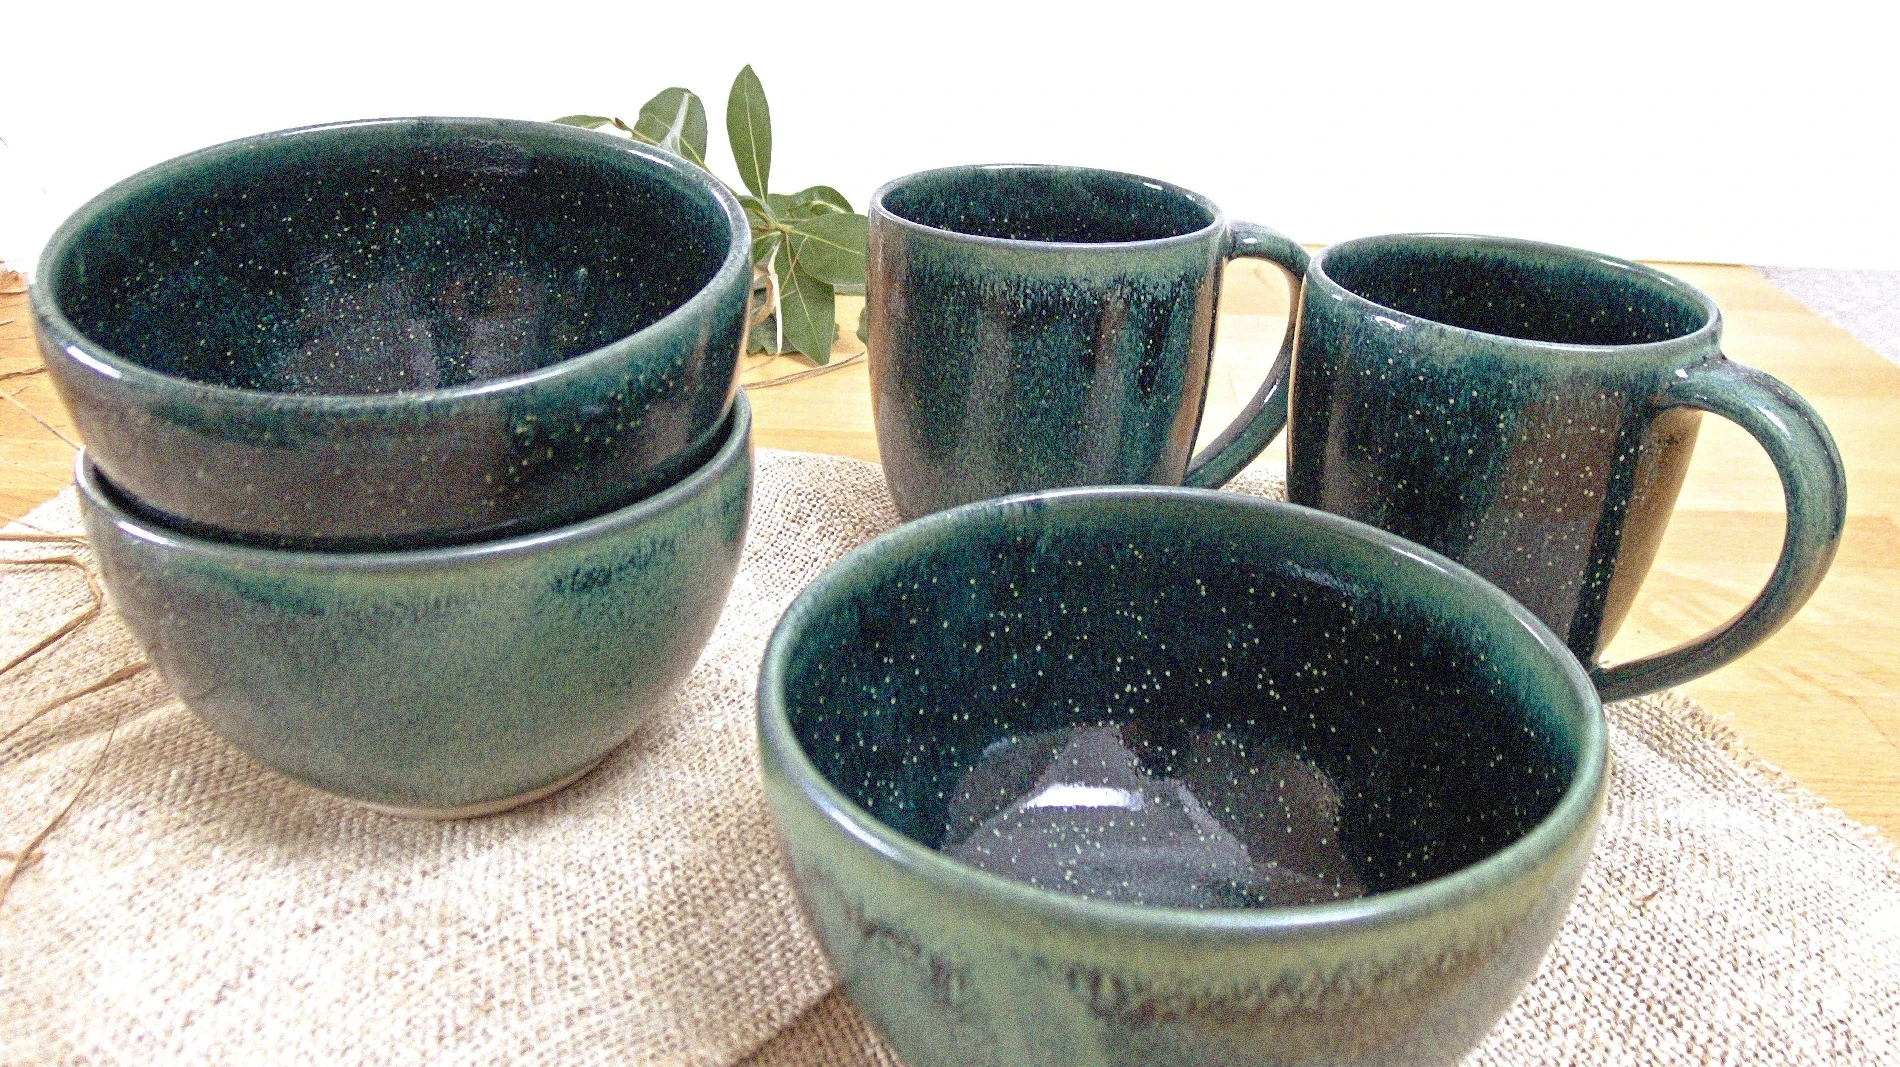 Bild von handgemachtem grünen Keramik-Geschirr